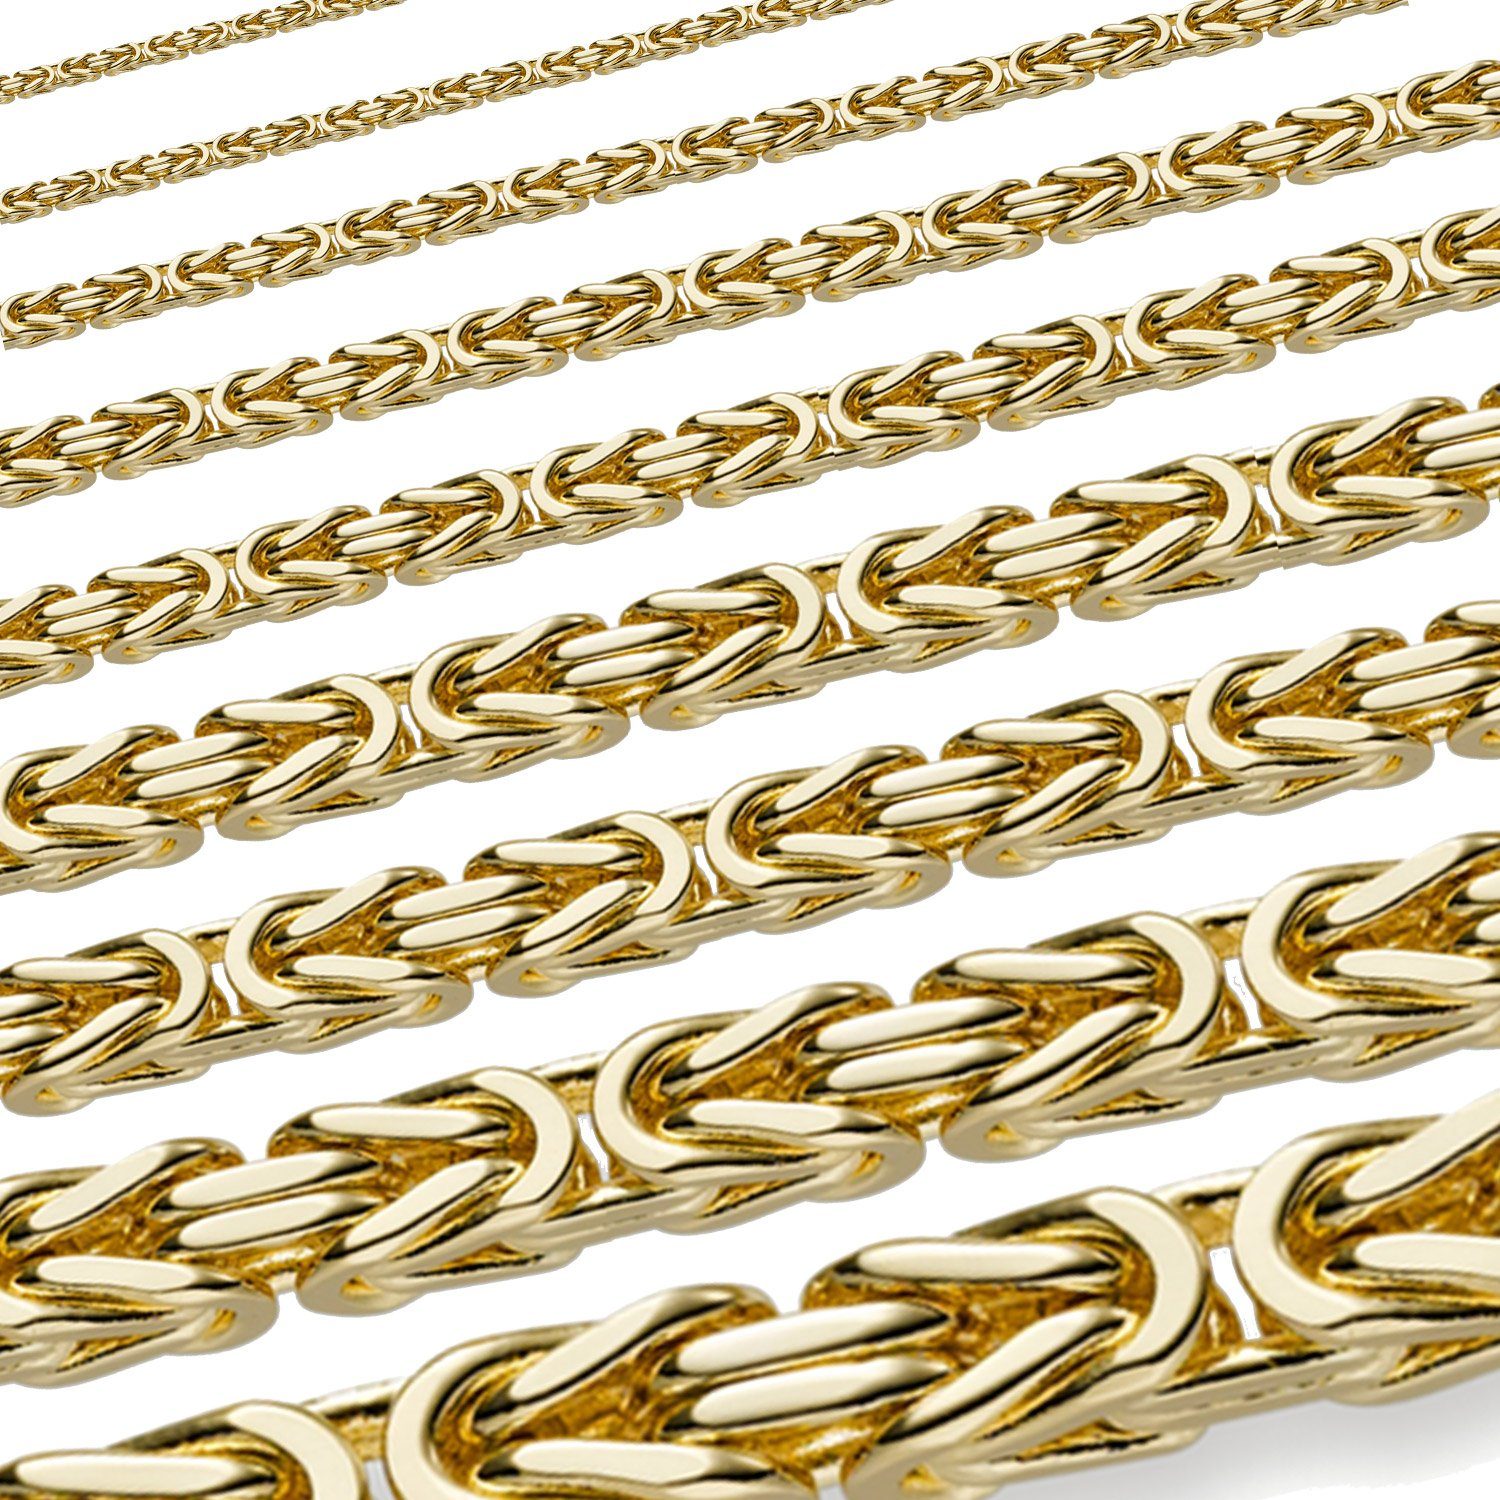 HOPLO Königskette Goldkette Königskette Länge 45cm - Breite 3,5mm - 585-14 Karat Gold, Made in Germany